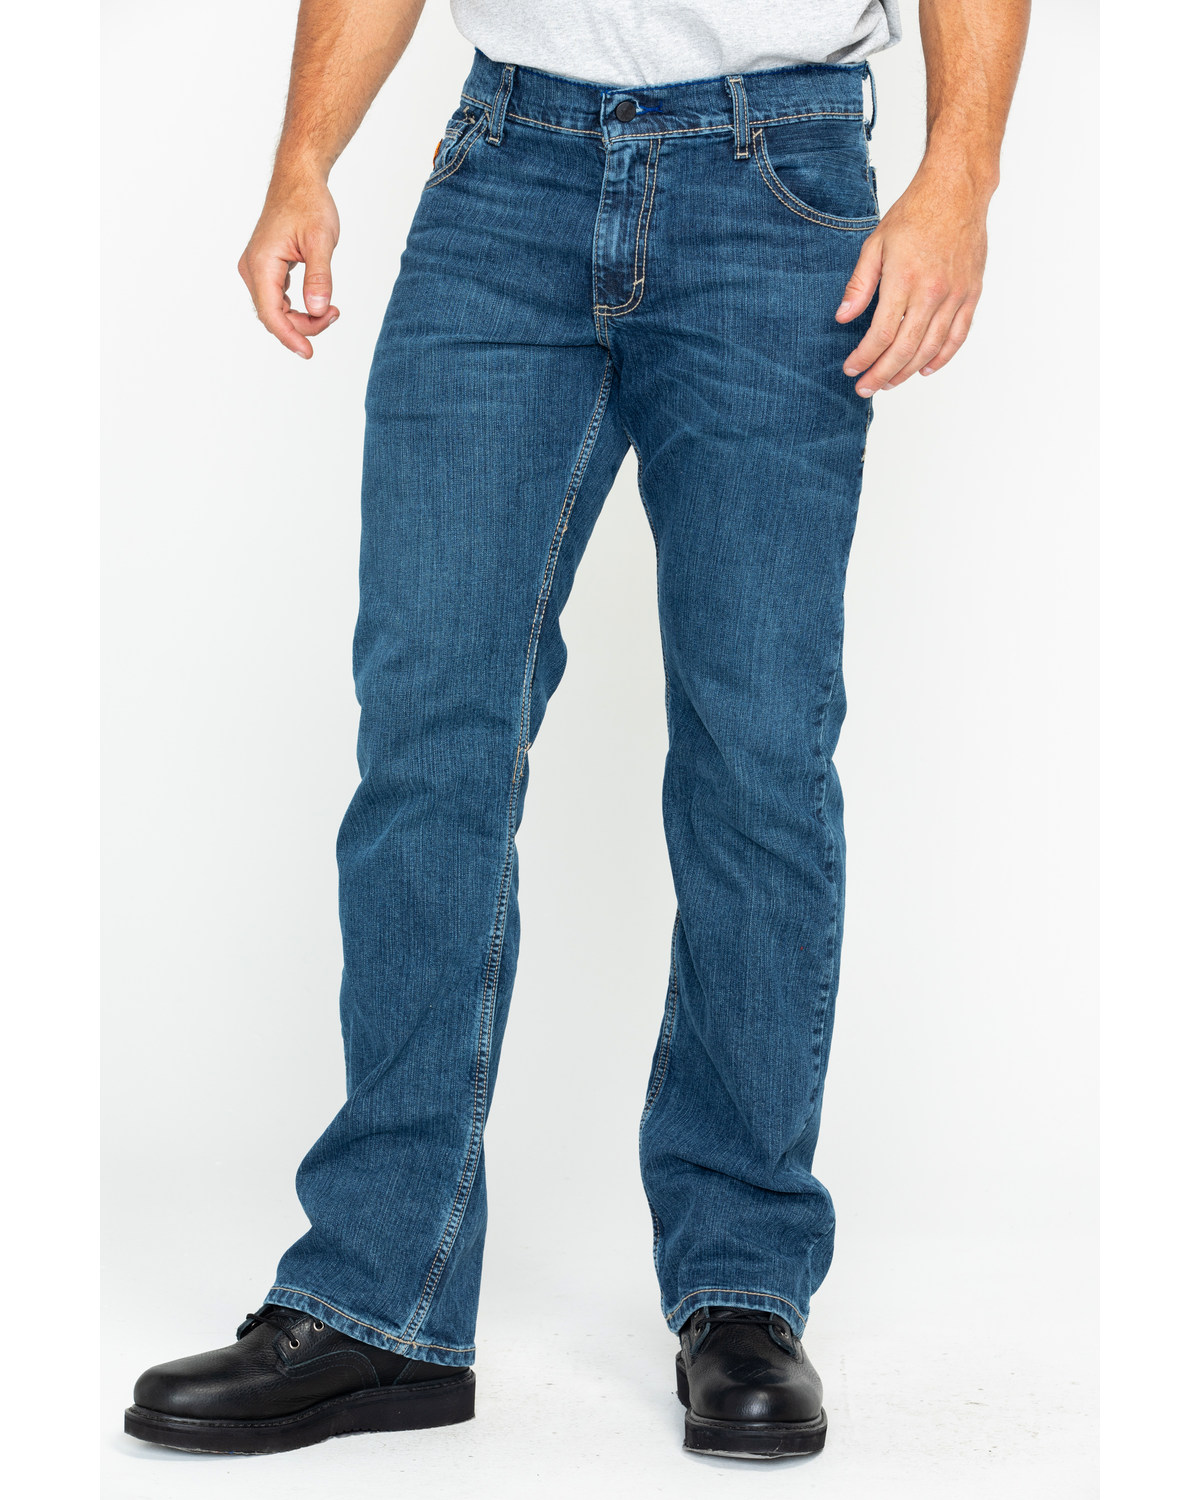 Wrangler Retro Men's FR Advanced Comfort Slim Boot Work Jeans | Boot Barn